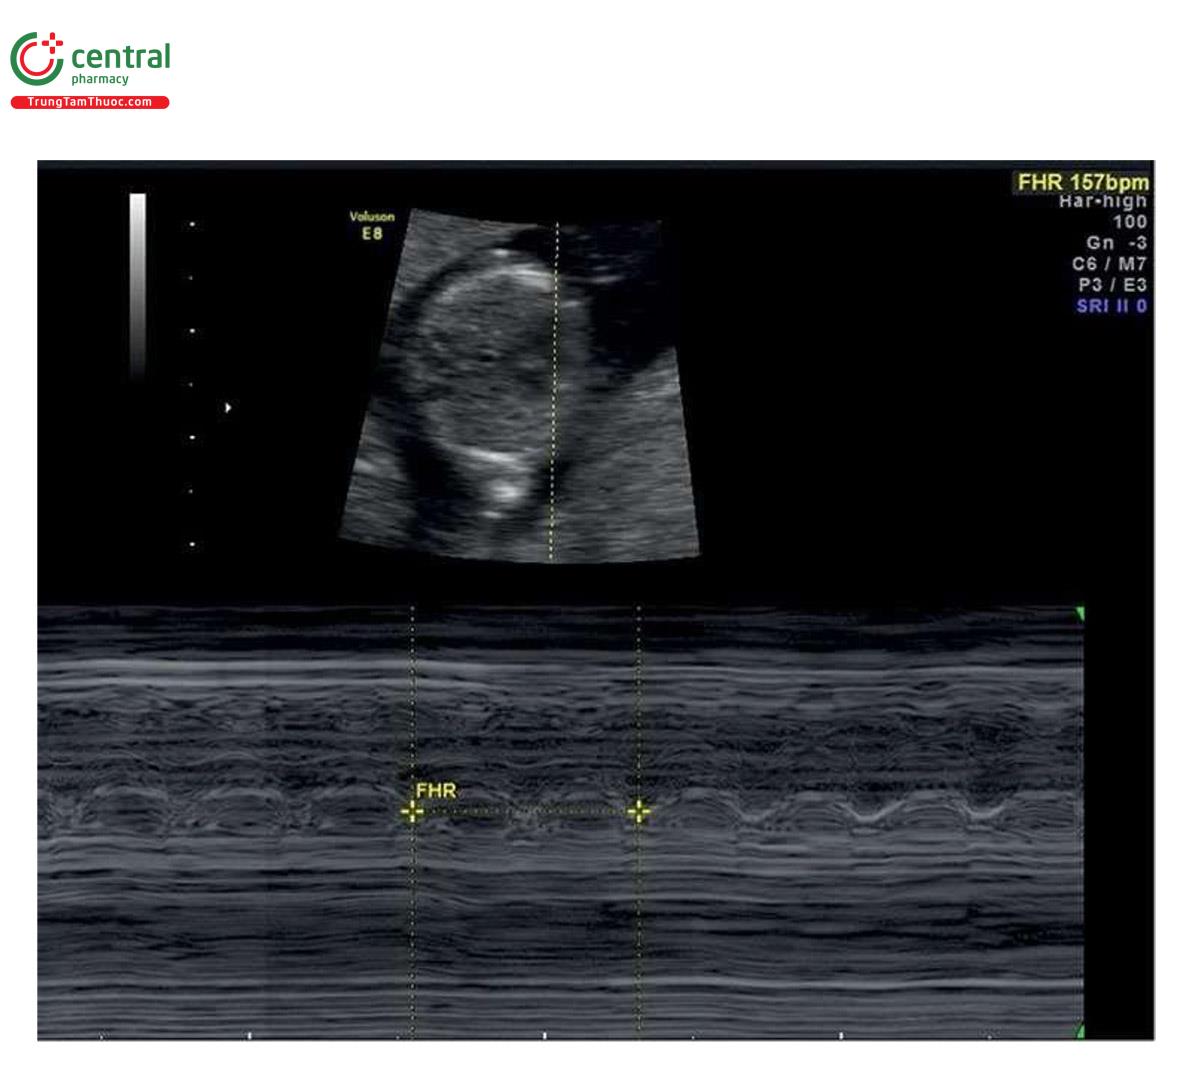 Hình 2.3: Siêu âm M-mode tim thai ở thai nhi 12 tuần tuổi. Lưu ý, đường M-mode cắt qua tim và hoạt động tim thai được hiển thị trên phố M-mode. Đây là mode được ưu tiên (cùng với lưu một đoạn phim ở B-mode) để ghi lại hoạt động tim thai trong quý 1 vì nó mang ít năng lượng hơn Doppler xung. Lưu ý, tần số tim thai đo được là 157 nhịp/phút.